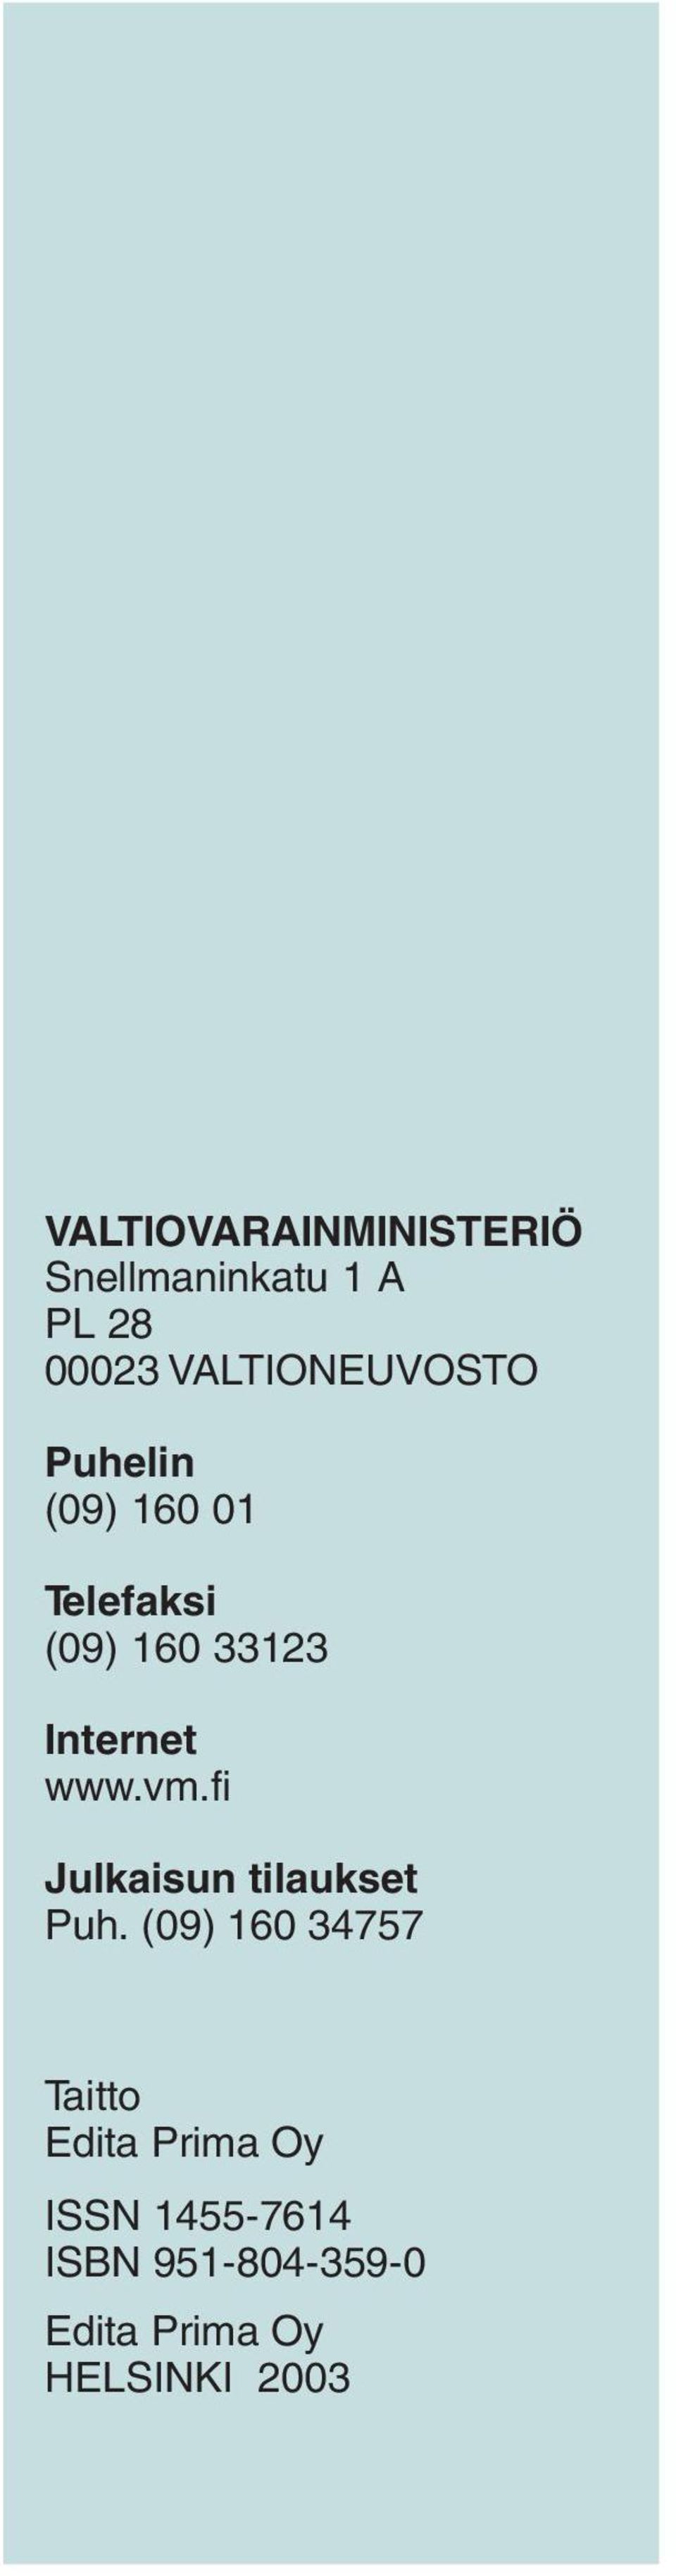 Internet www.vm.fi Julkaisun tilaukset Puh.